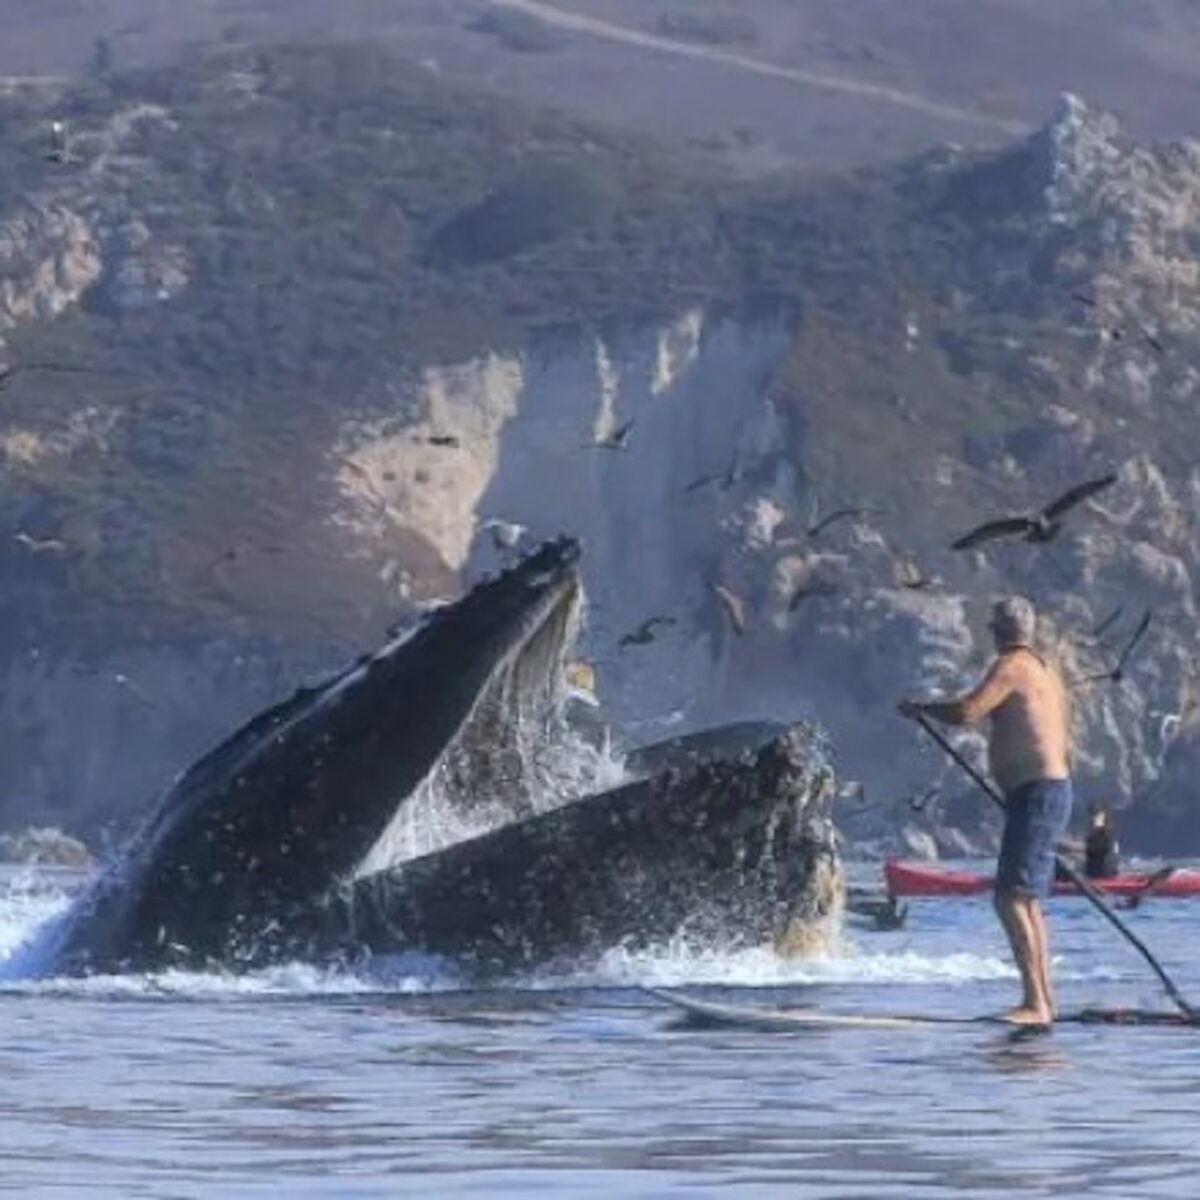 Vengono inghiottite dalla balena: 2 donne salve per miracolo